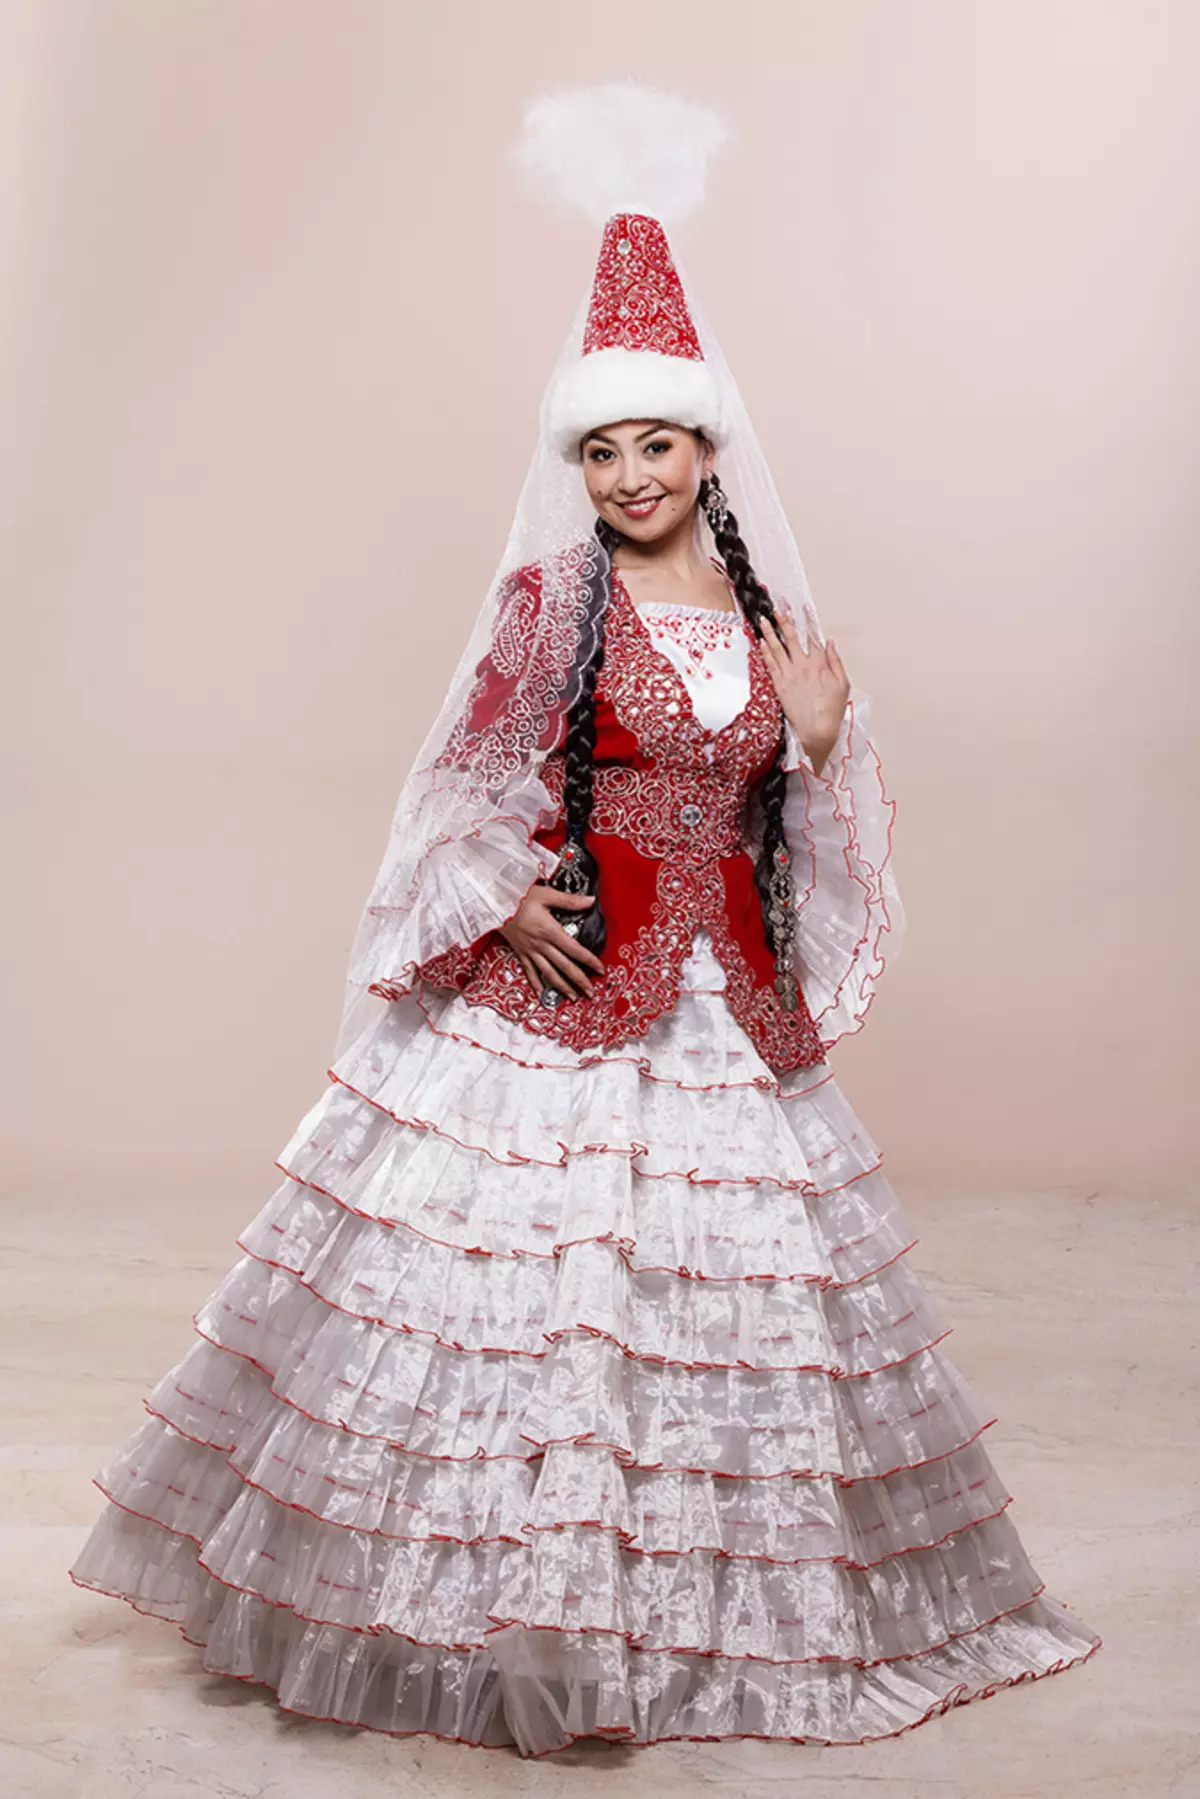 Kazakh National Costume (Hoto 68): Mata Cosstume Kazakhs, jama'a 842_10